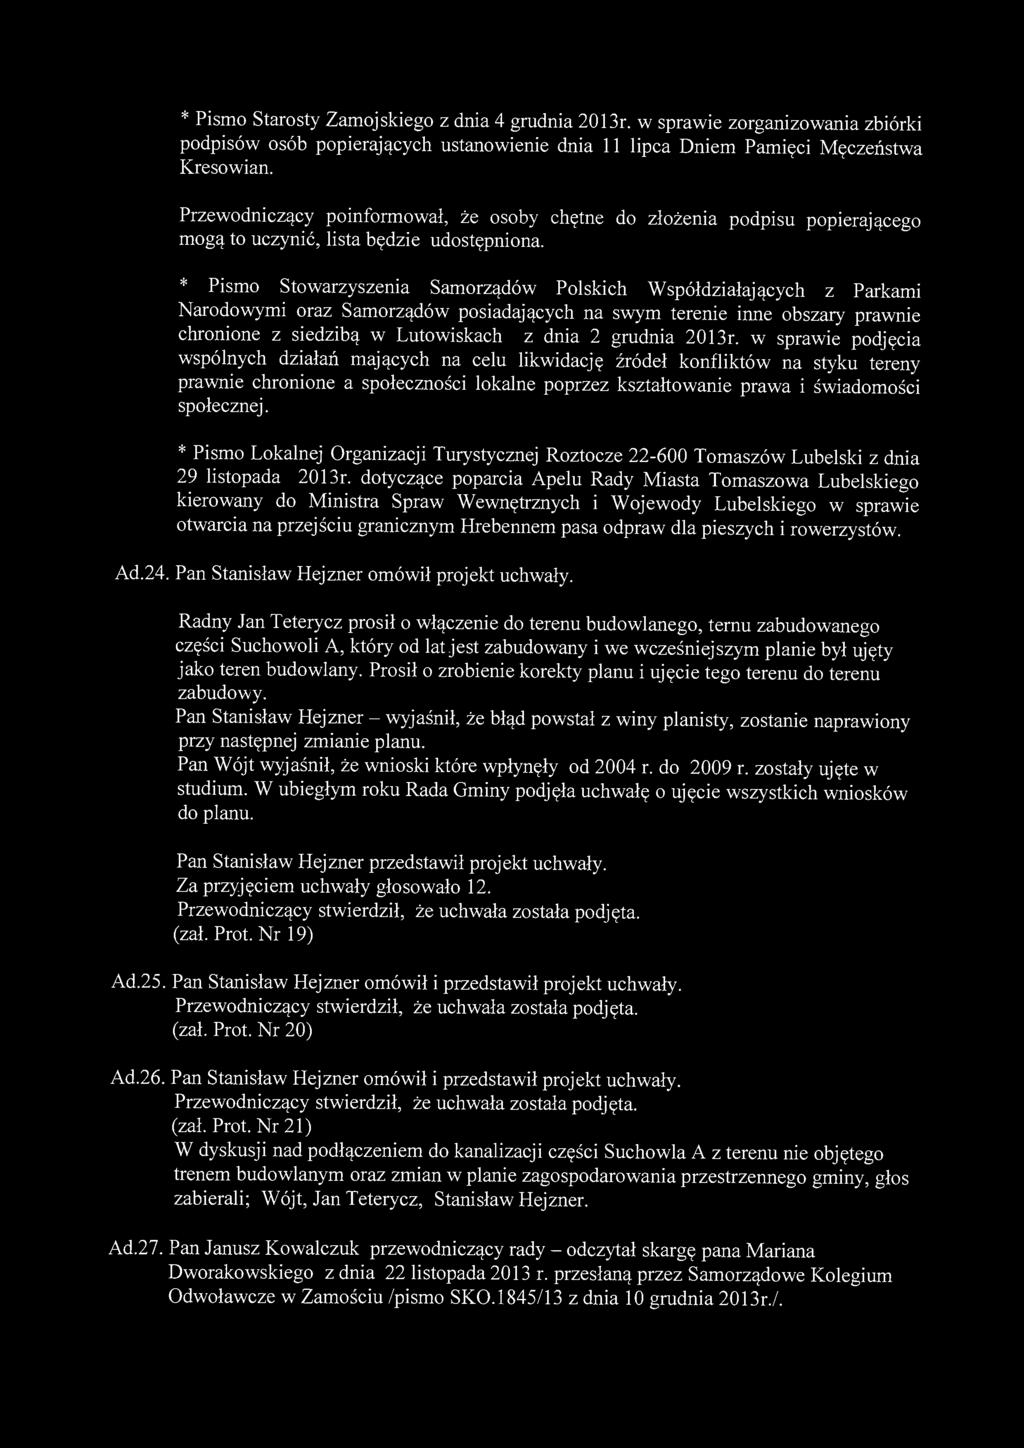 * Pismo Starosty Zamojskiego z dnia 4 grudnia 2013r. w sprawie zorganizowania zbiórki podpisów osób popierających ustanowienie dnia 11 lipca Dniem Pamięci Męczeństwa Kresowian.